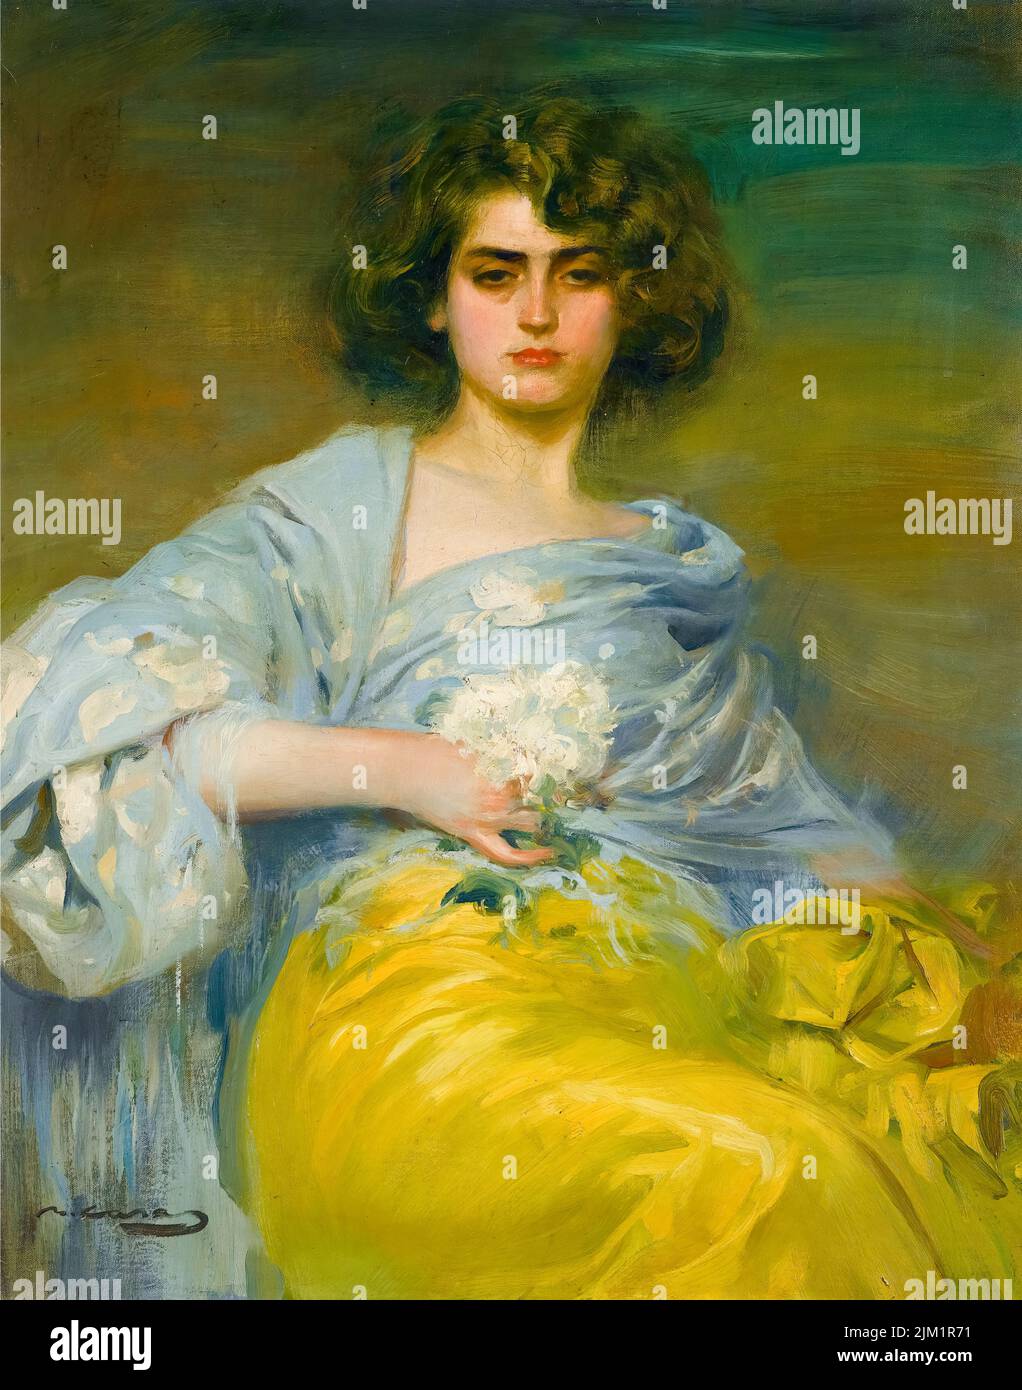 Ramon Casas, Julia, (Júlia Peraire i Ricarte, 1888-1941, épouse de l'artiste), portrait peint à l'huile sur toile, 1908 Banque D'Images